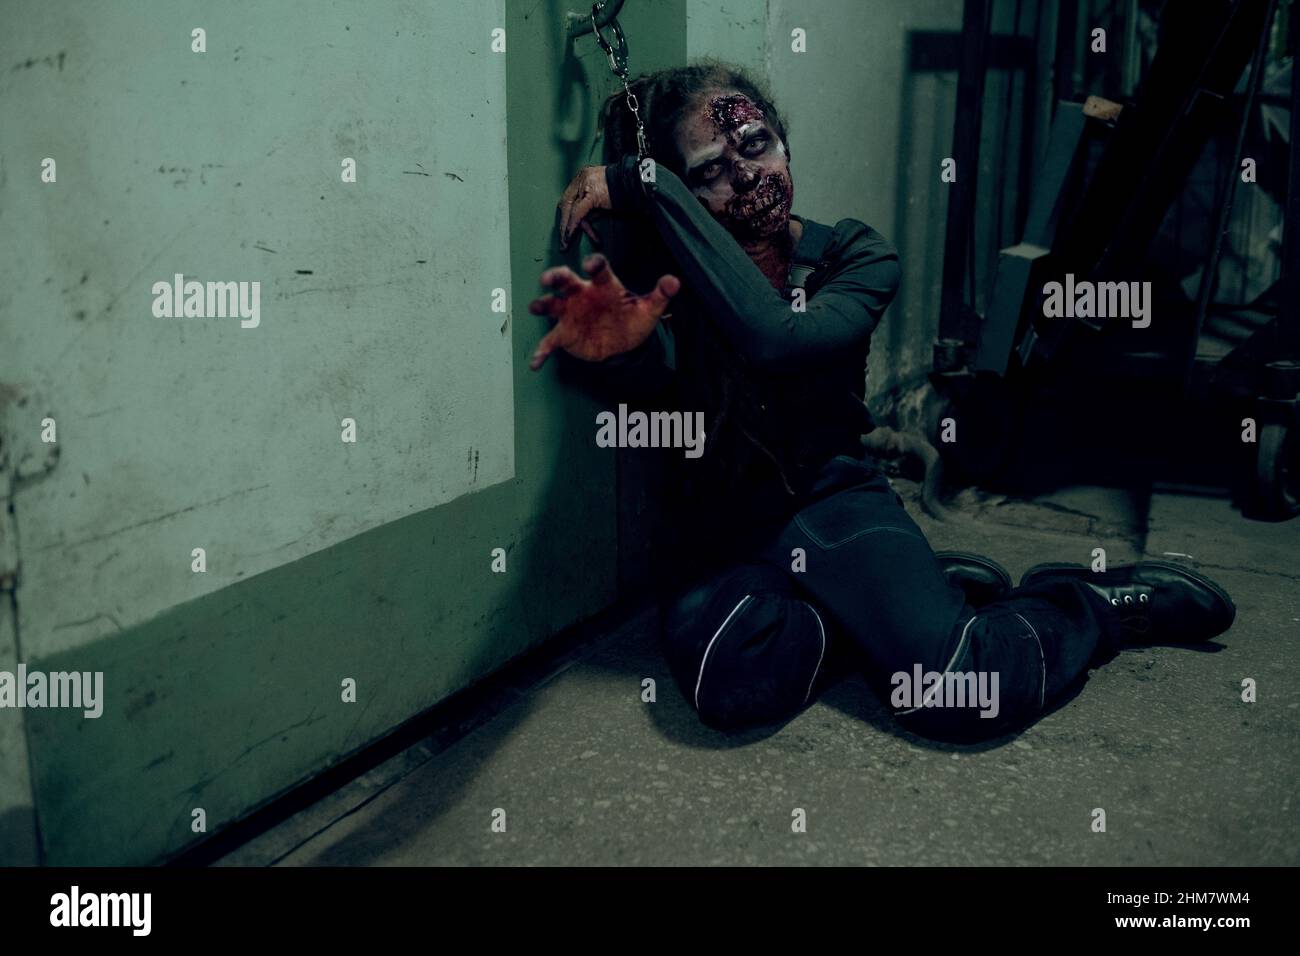 Ganzkörperaufnahme eines weiblichen Zombies, der im dunklen Raum an die Wand gekettet ist und bis zur Kamera reicht, Raum kopieren Stockfoto